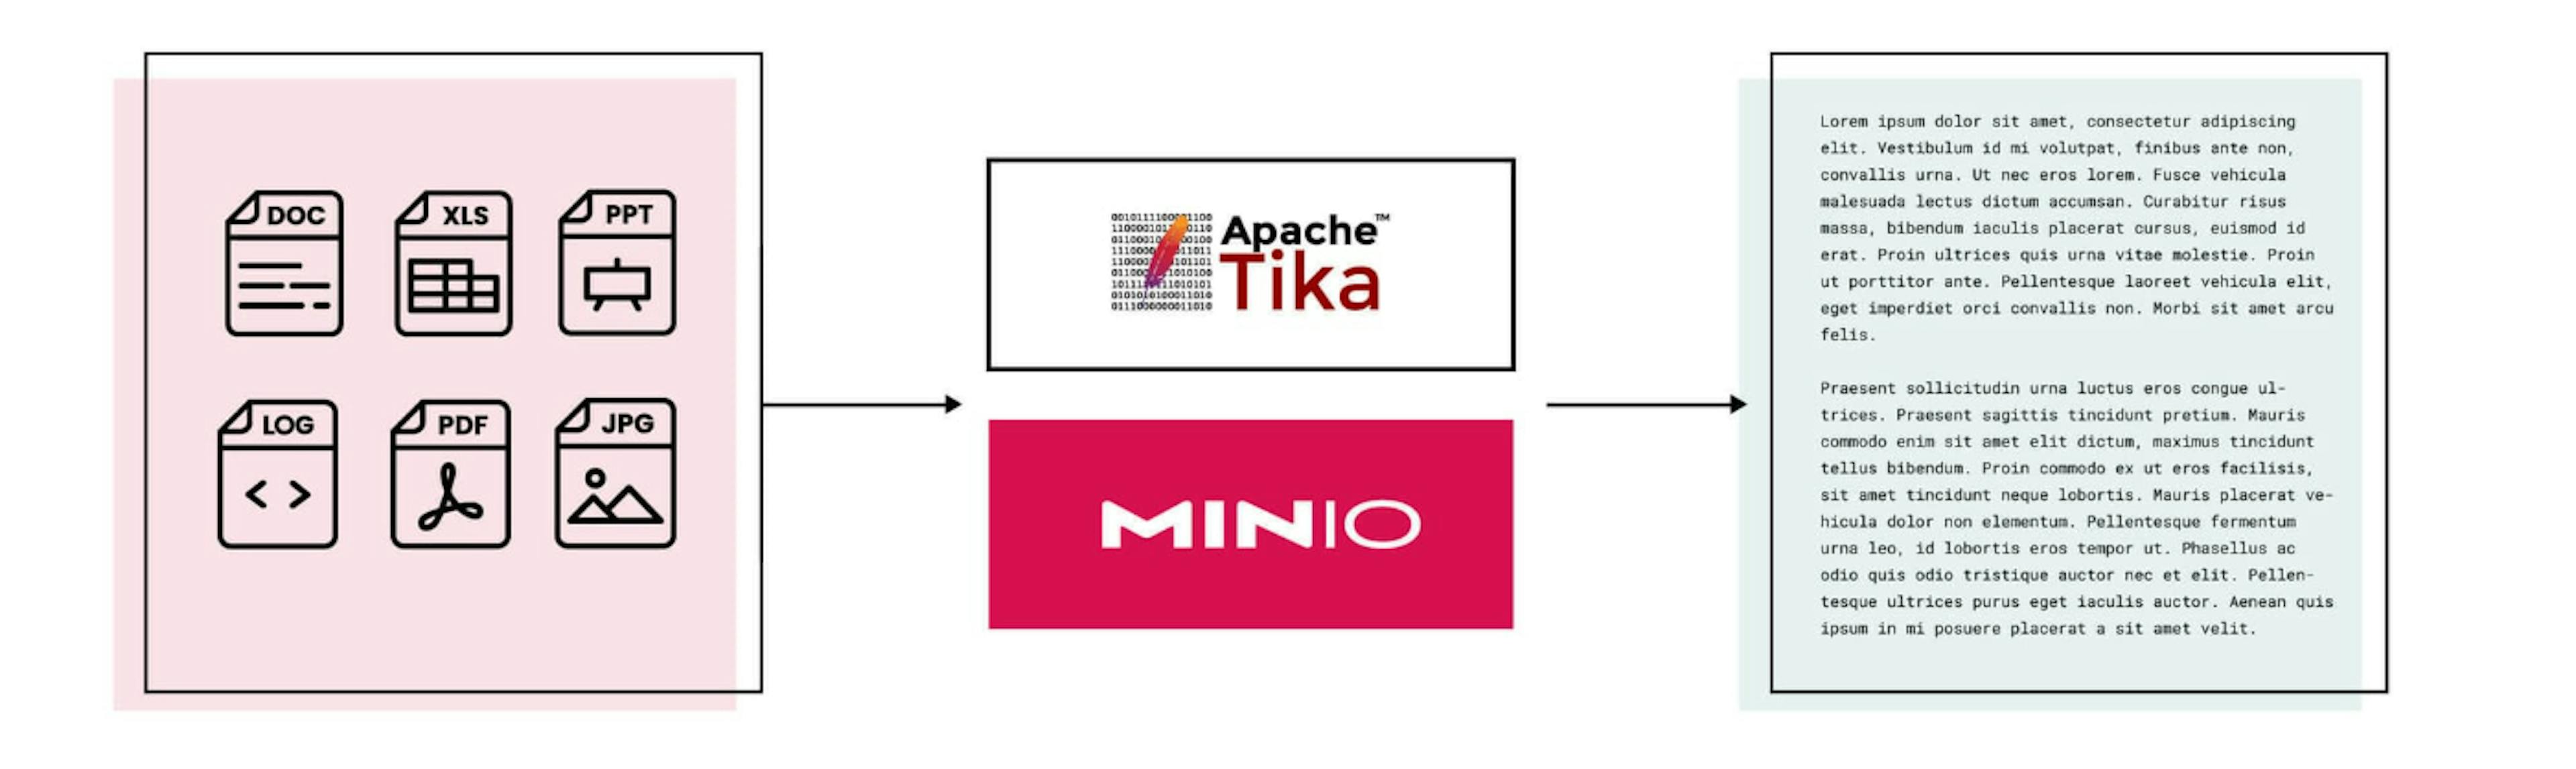 featured image - Aprovechando MinIO y Apache Tika para la extracción y el análisis de texto automatizados